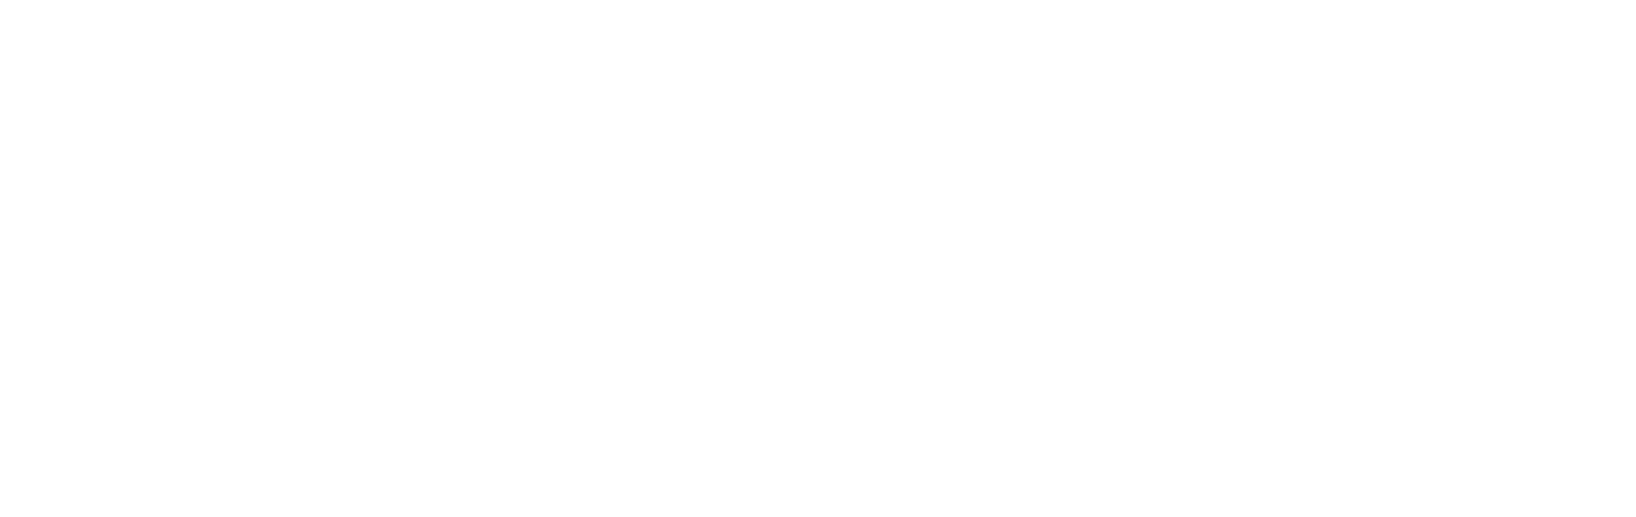 Zeta Global logo large for dark backgrounds (transparent PNG)